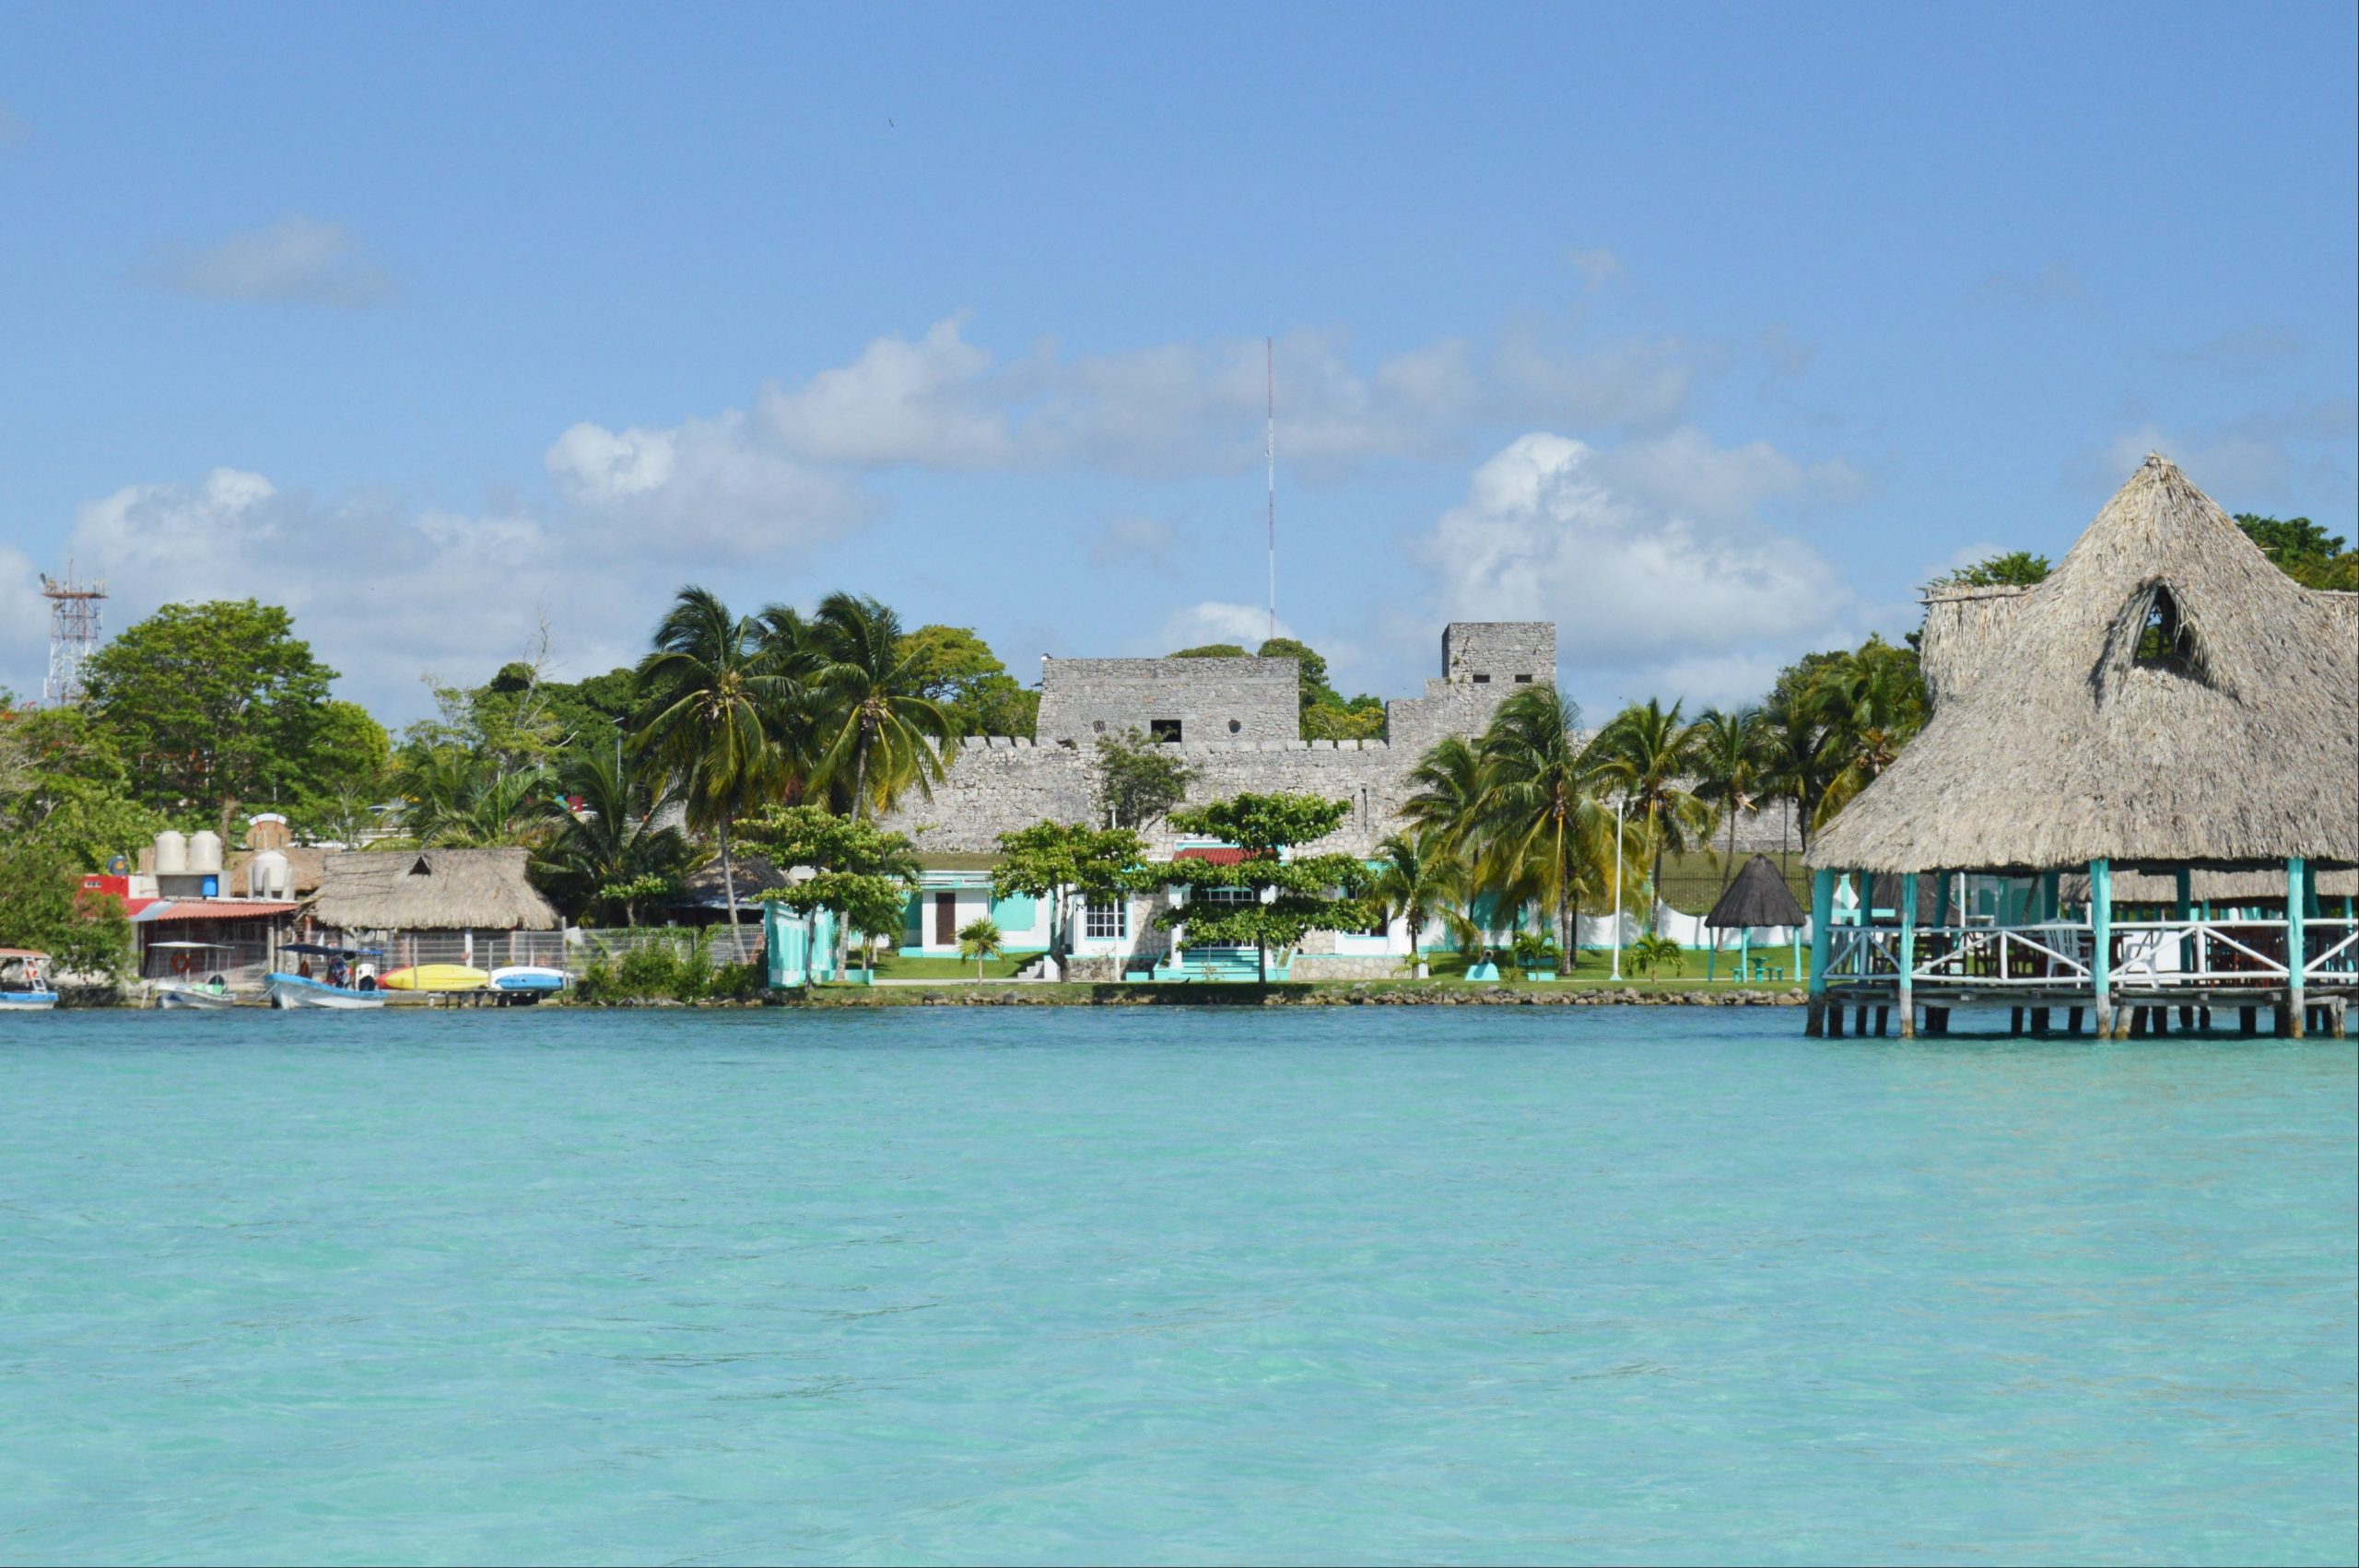 Hoteleros se oponen a que los turistas paguen impuestos en el Caribe